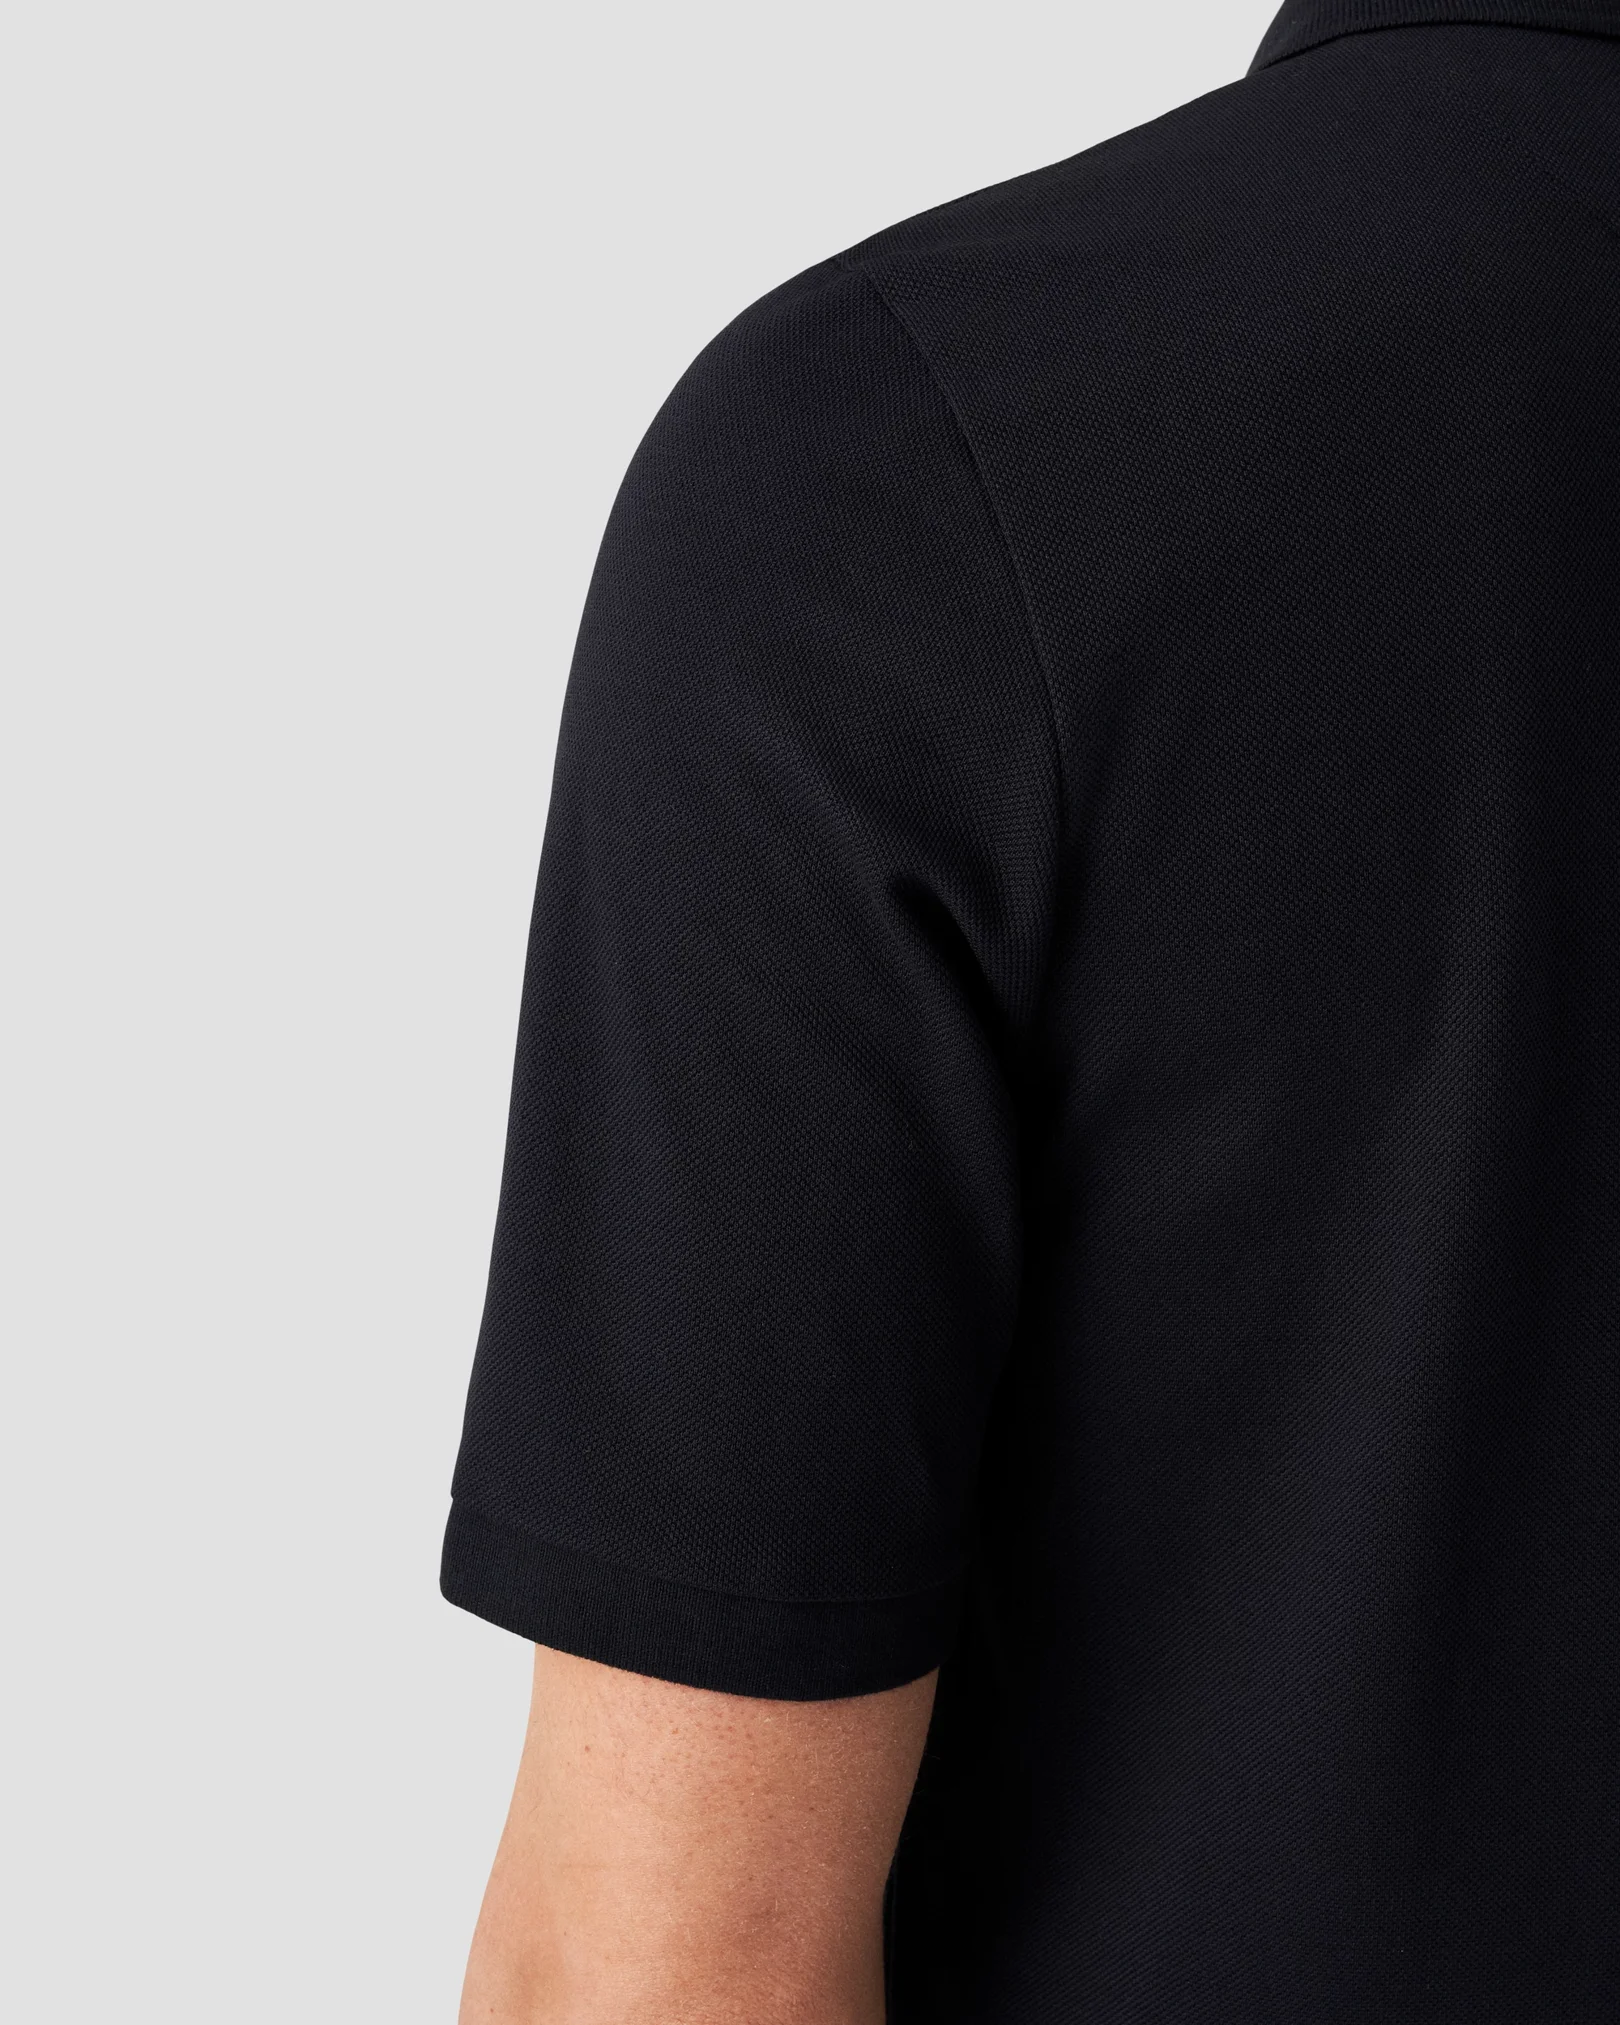 Eton - Navy Piqué Polo Shirt